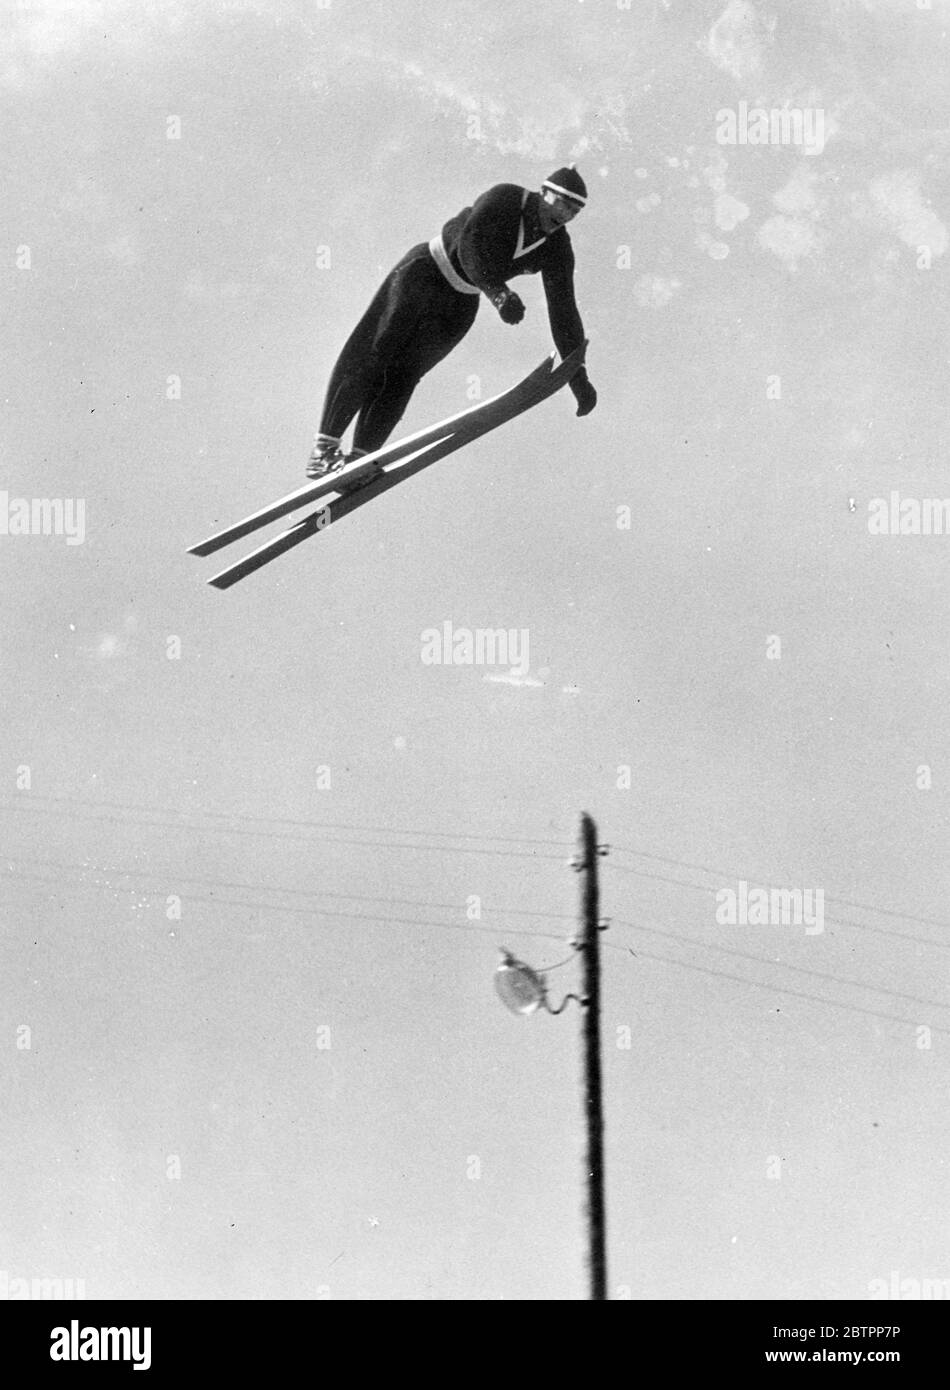 Skifahrer am Himmel. Reider Anderson, der Norweger, schwungend durch den Himmel, während er für die Ski-Weltmeisterschaften in Lahtis, Finnland, trainiert. Stockfoto